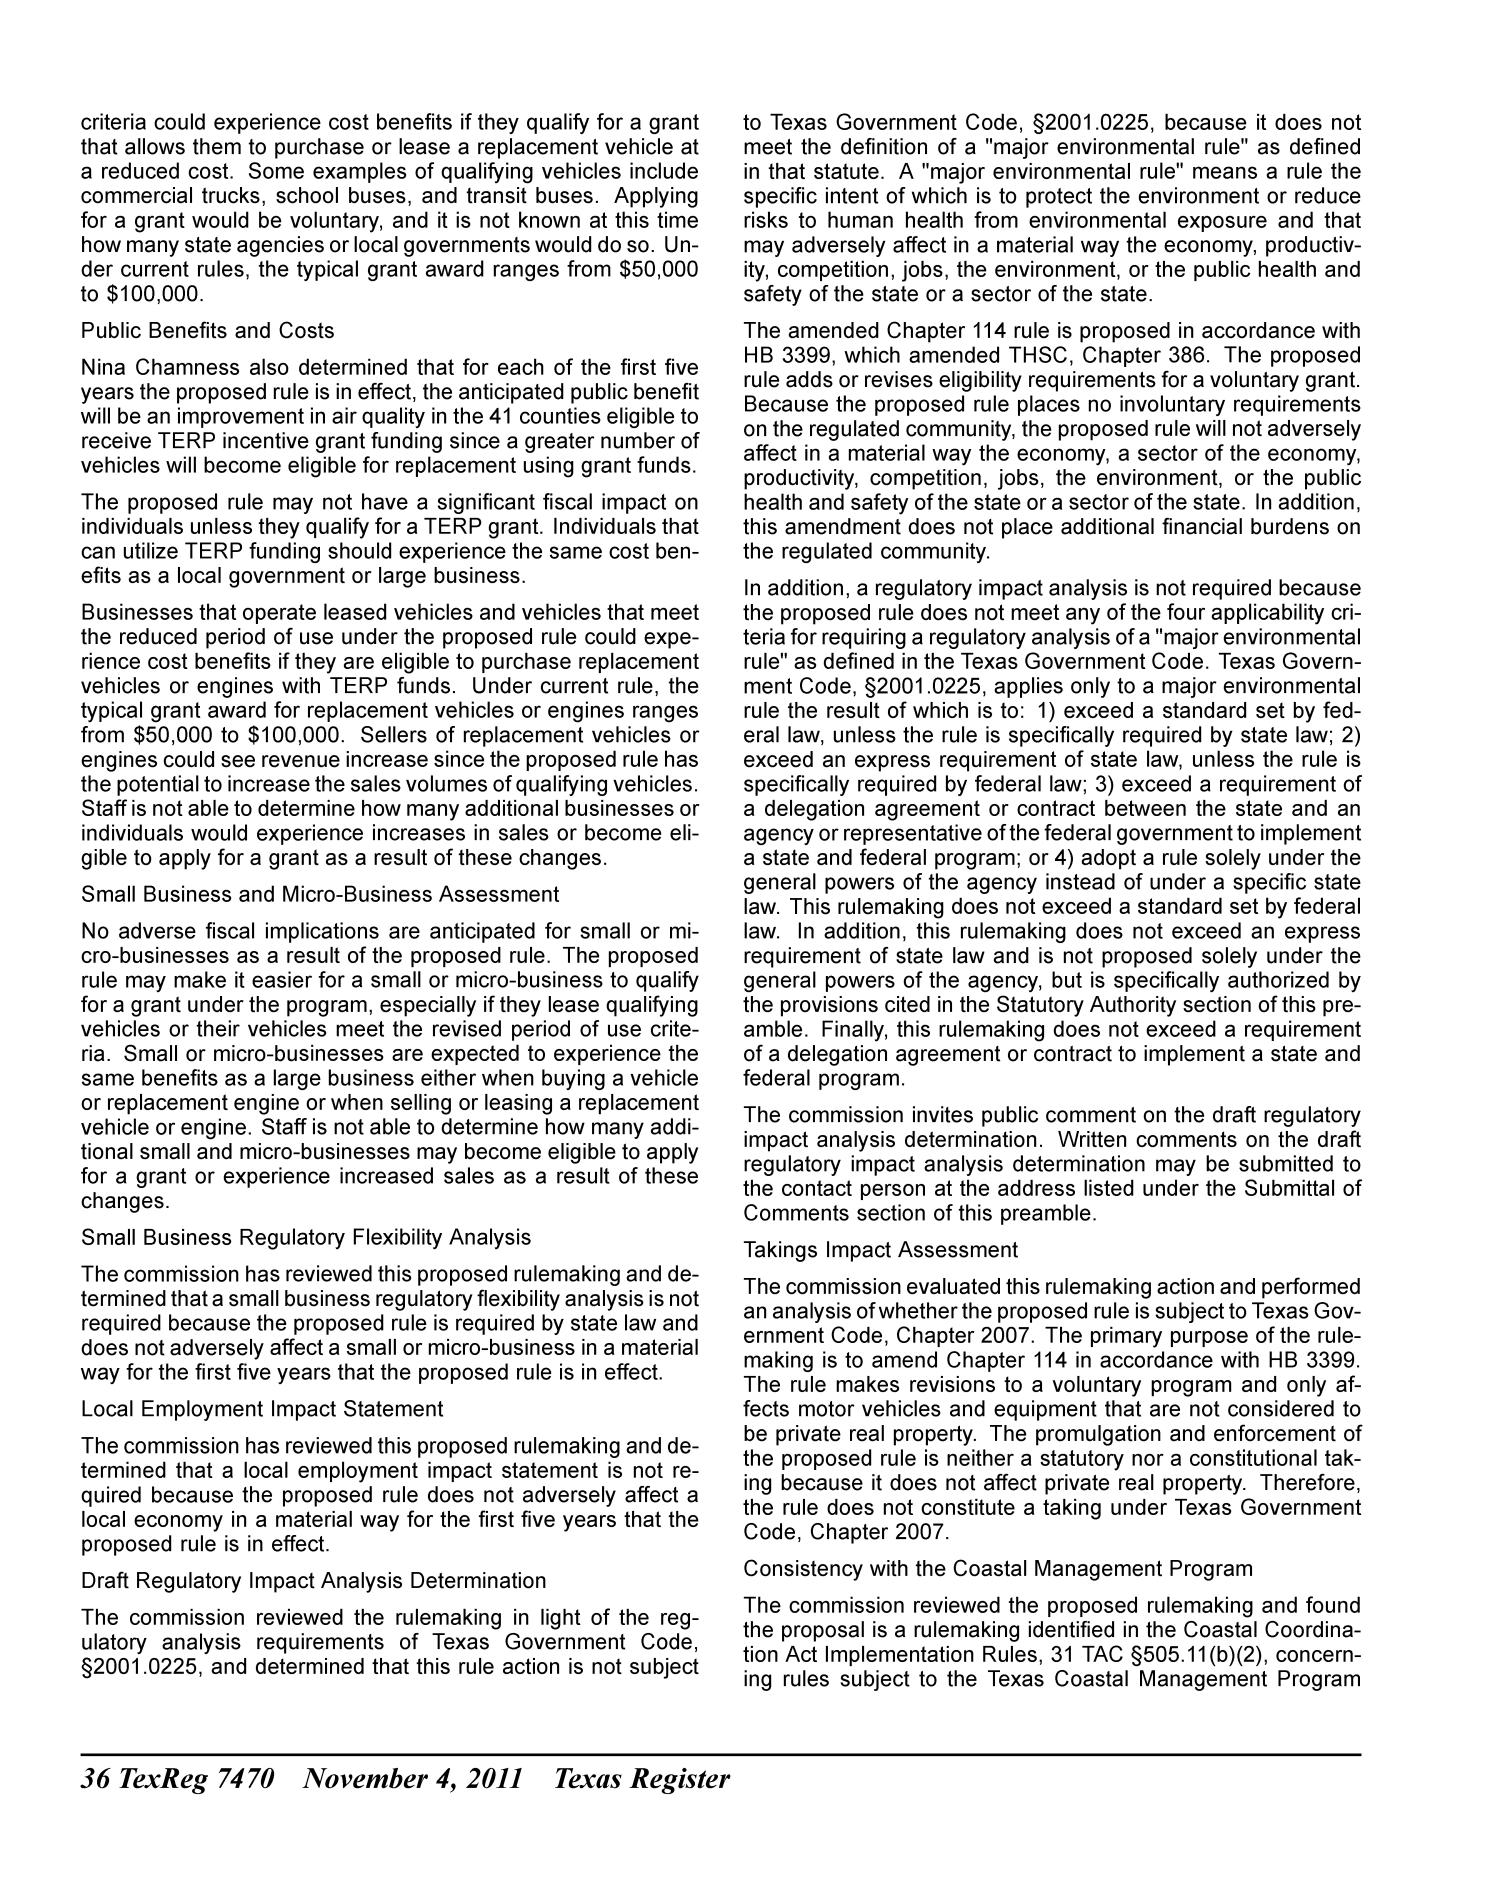 Texas Register, Volume 36, Number 44, Pages 7417-7610, November 4, 2011
                                                
                                                    7470
                                                